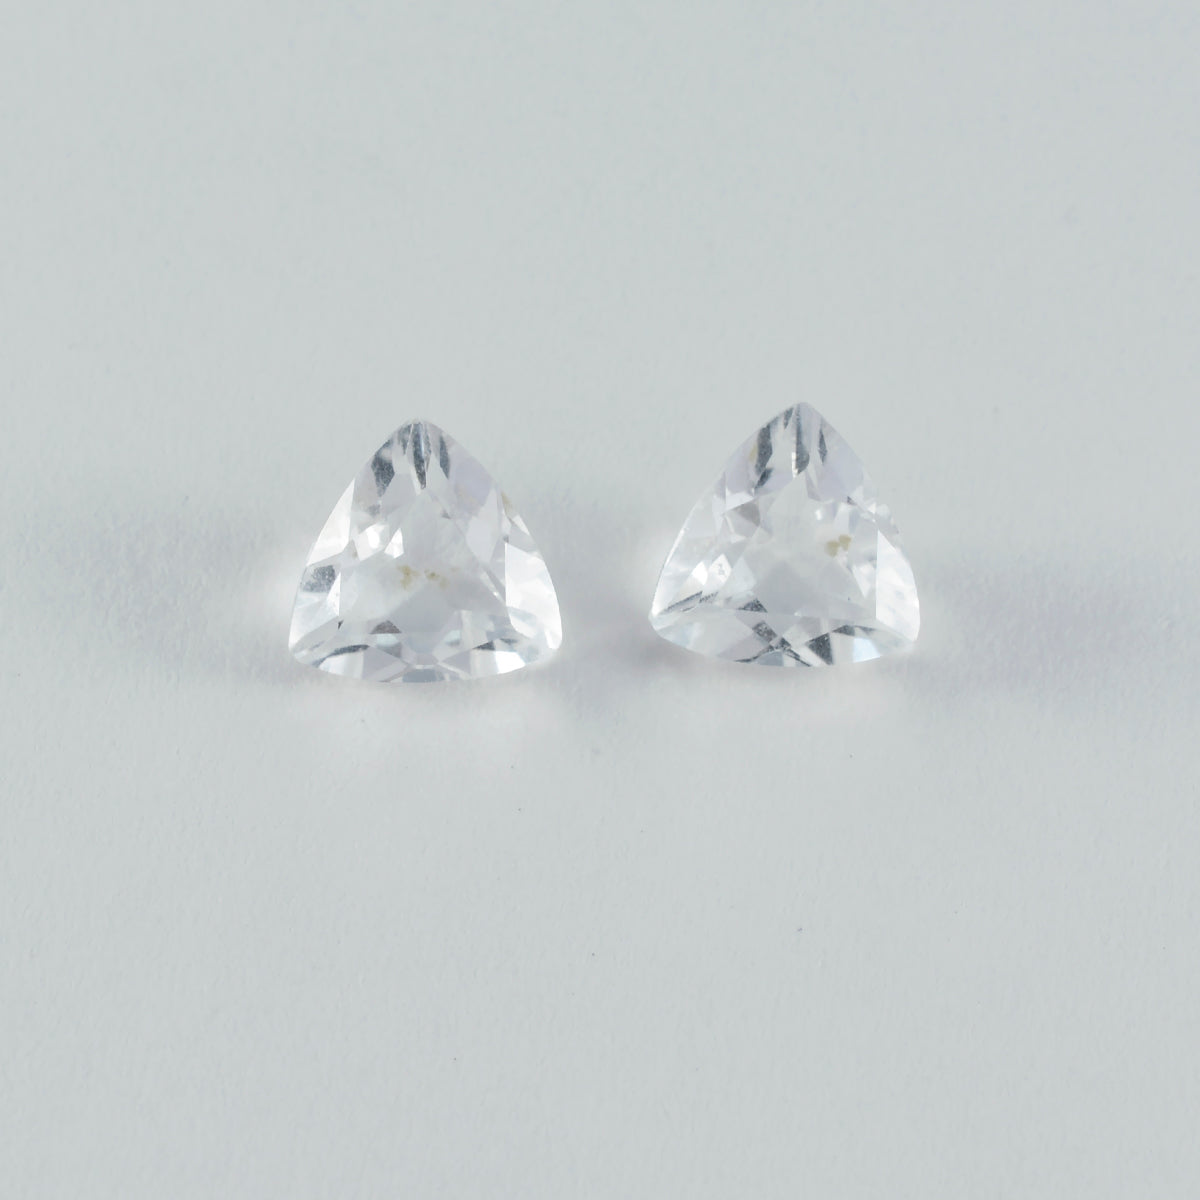 riyogems 1pc quartz cristal blanc à facettes 15x15 mm forme trillion a+ qualité pierre précieuse